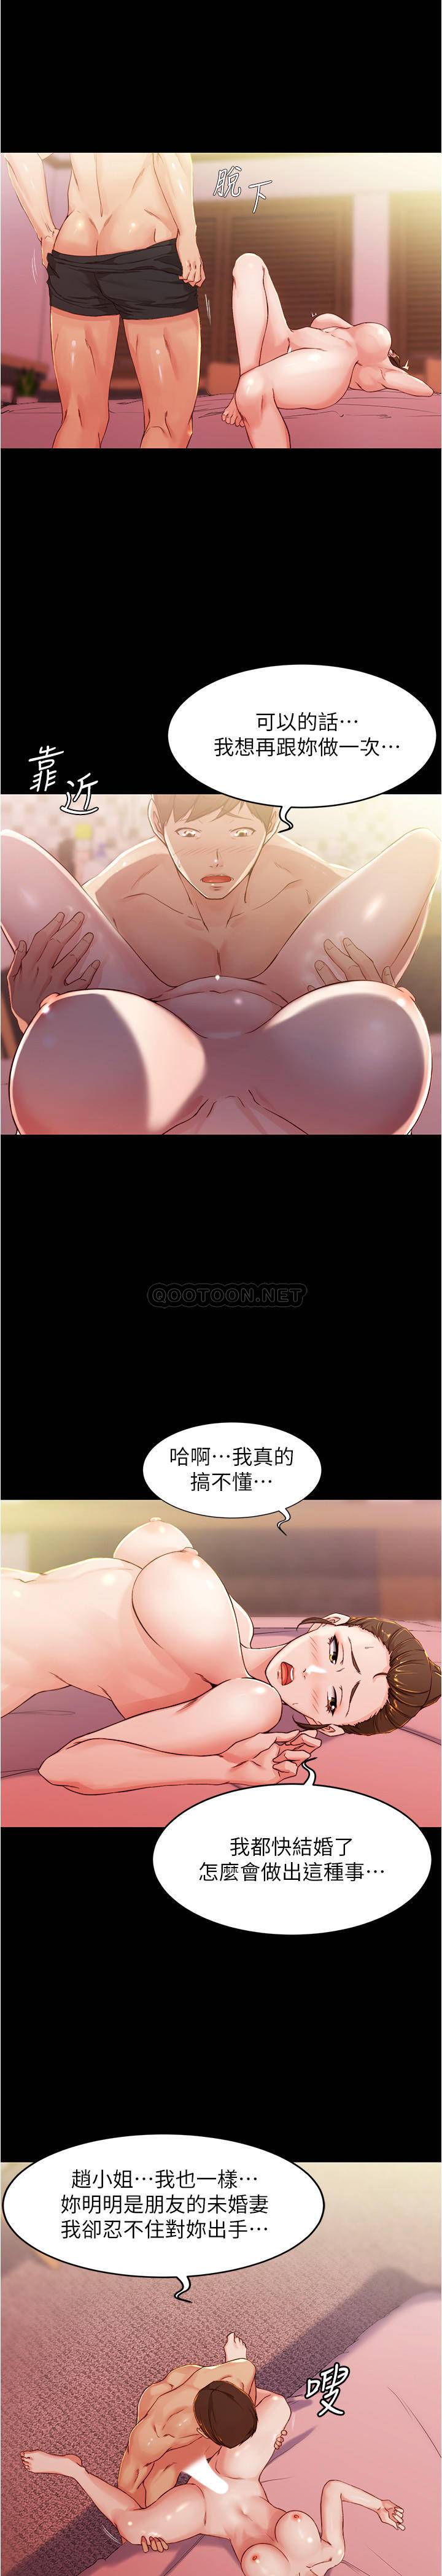 韩国污漫画 小褲褲筆記 第27话 - 秘密被穗桦发现? 9